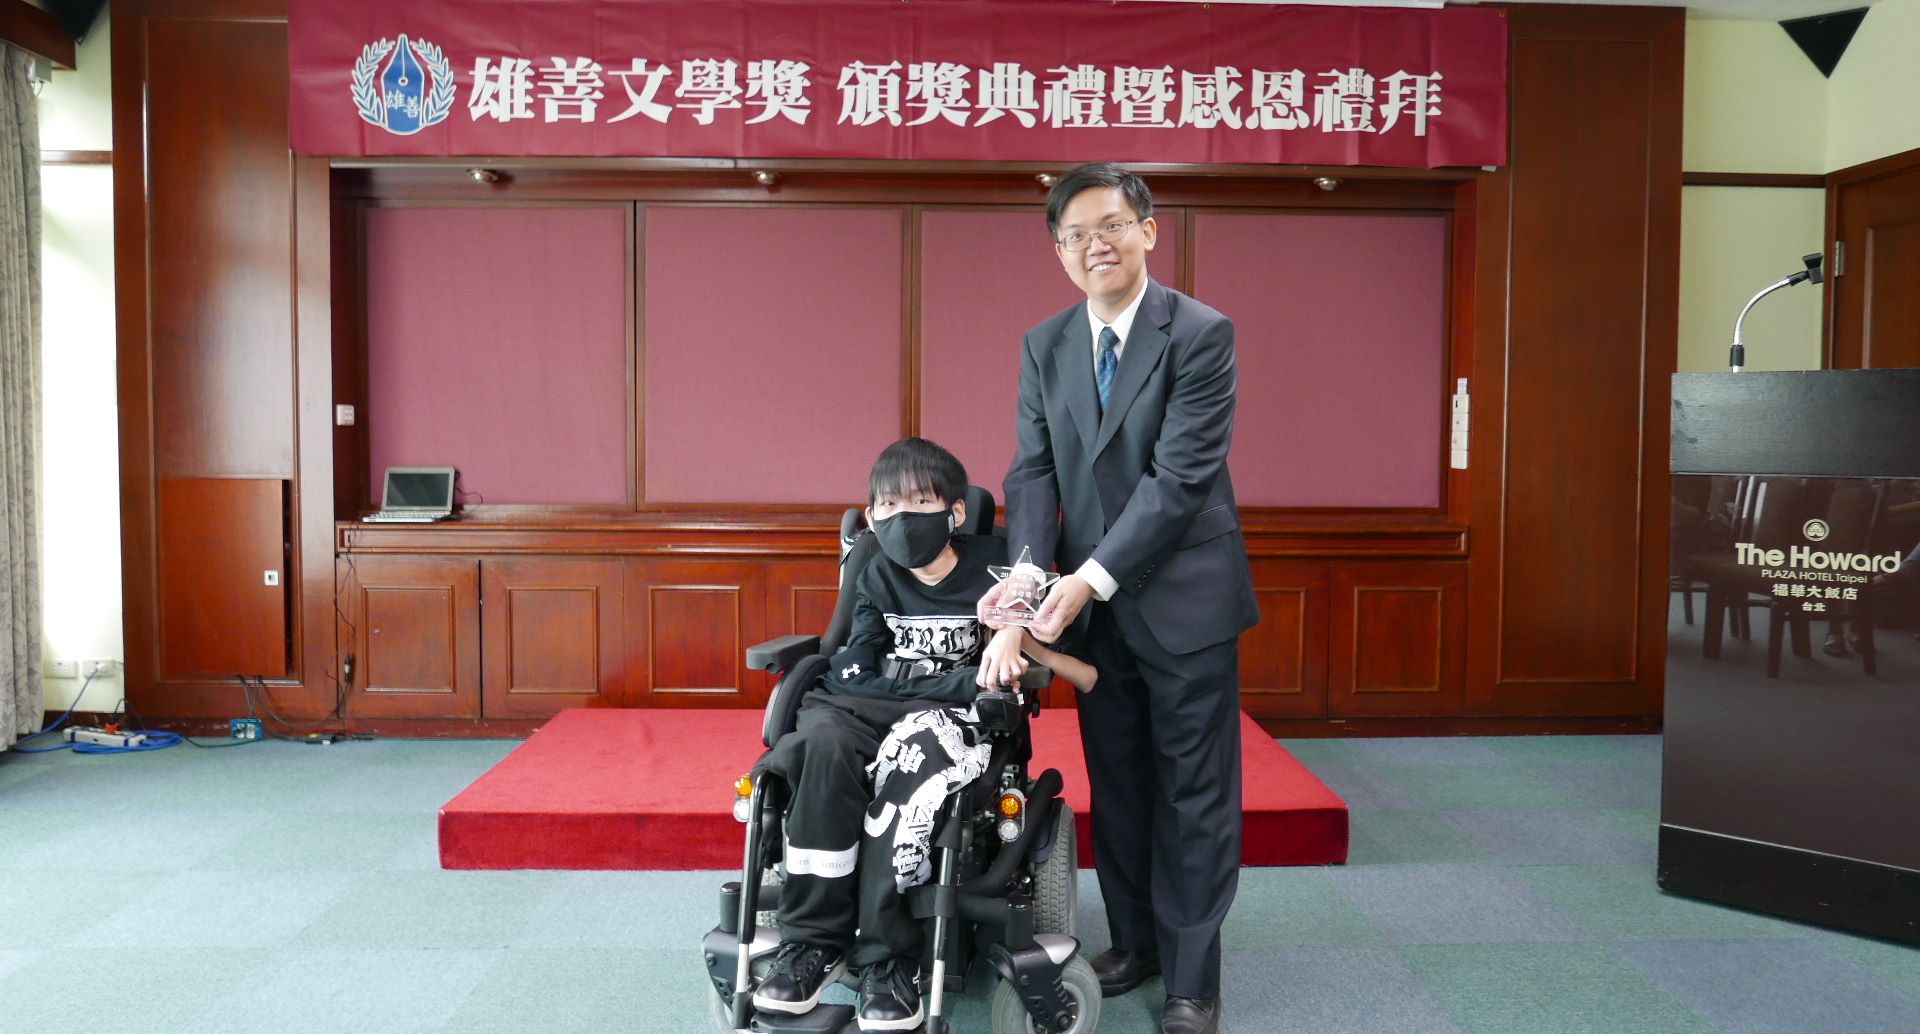 去年10月底，张闵轩获得雄善文学奖佳作奖。